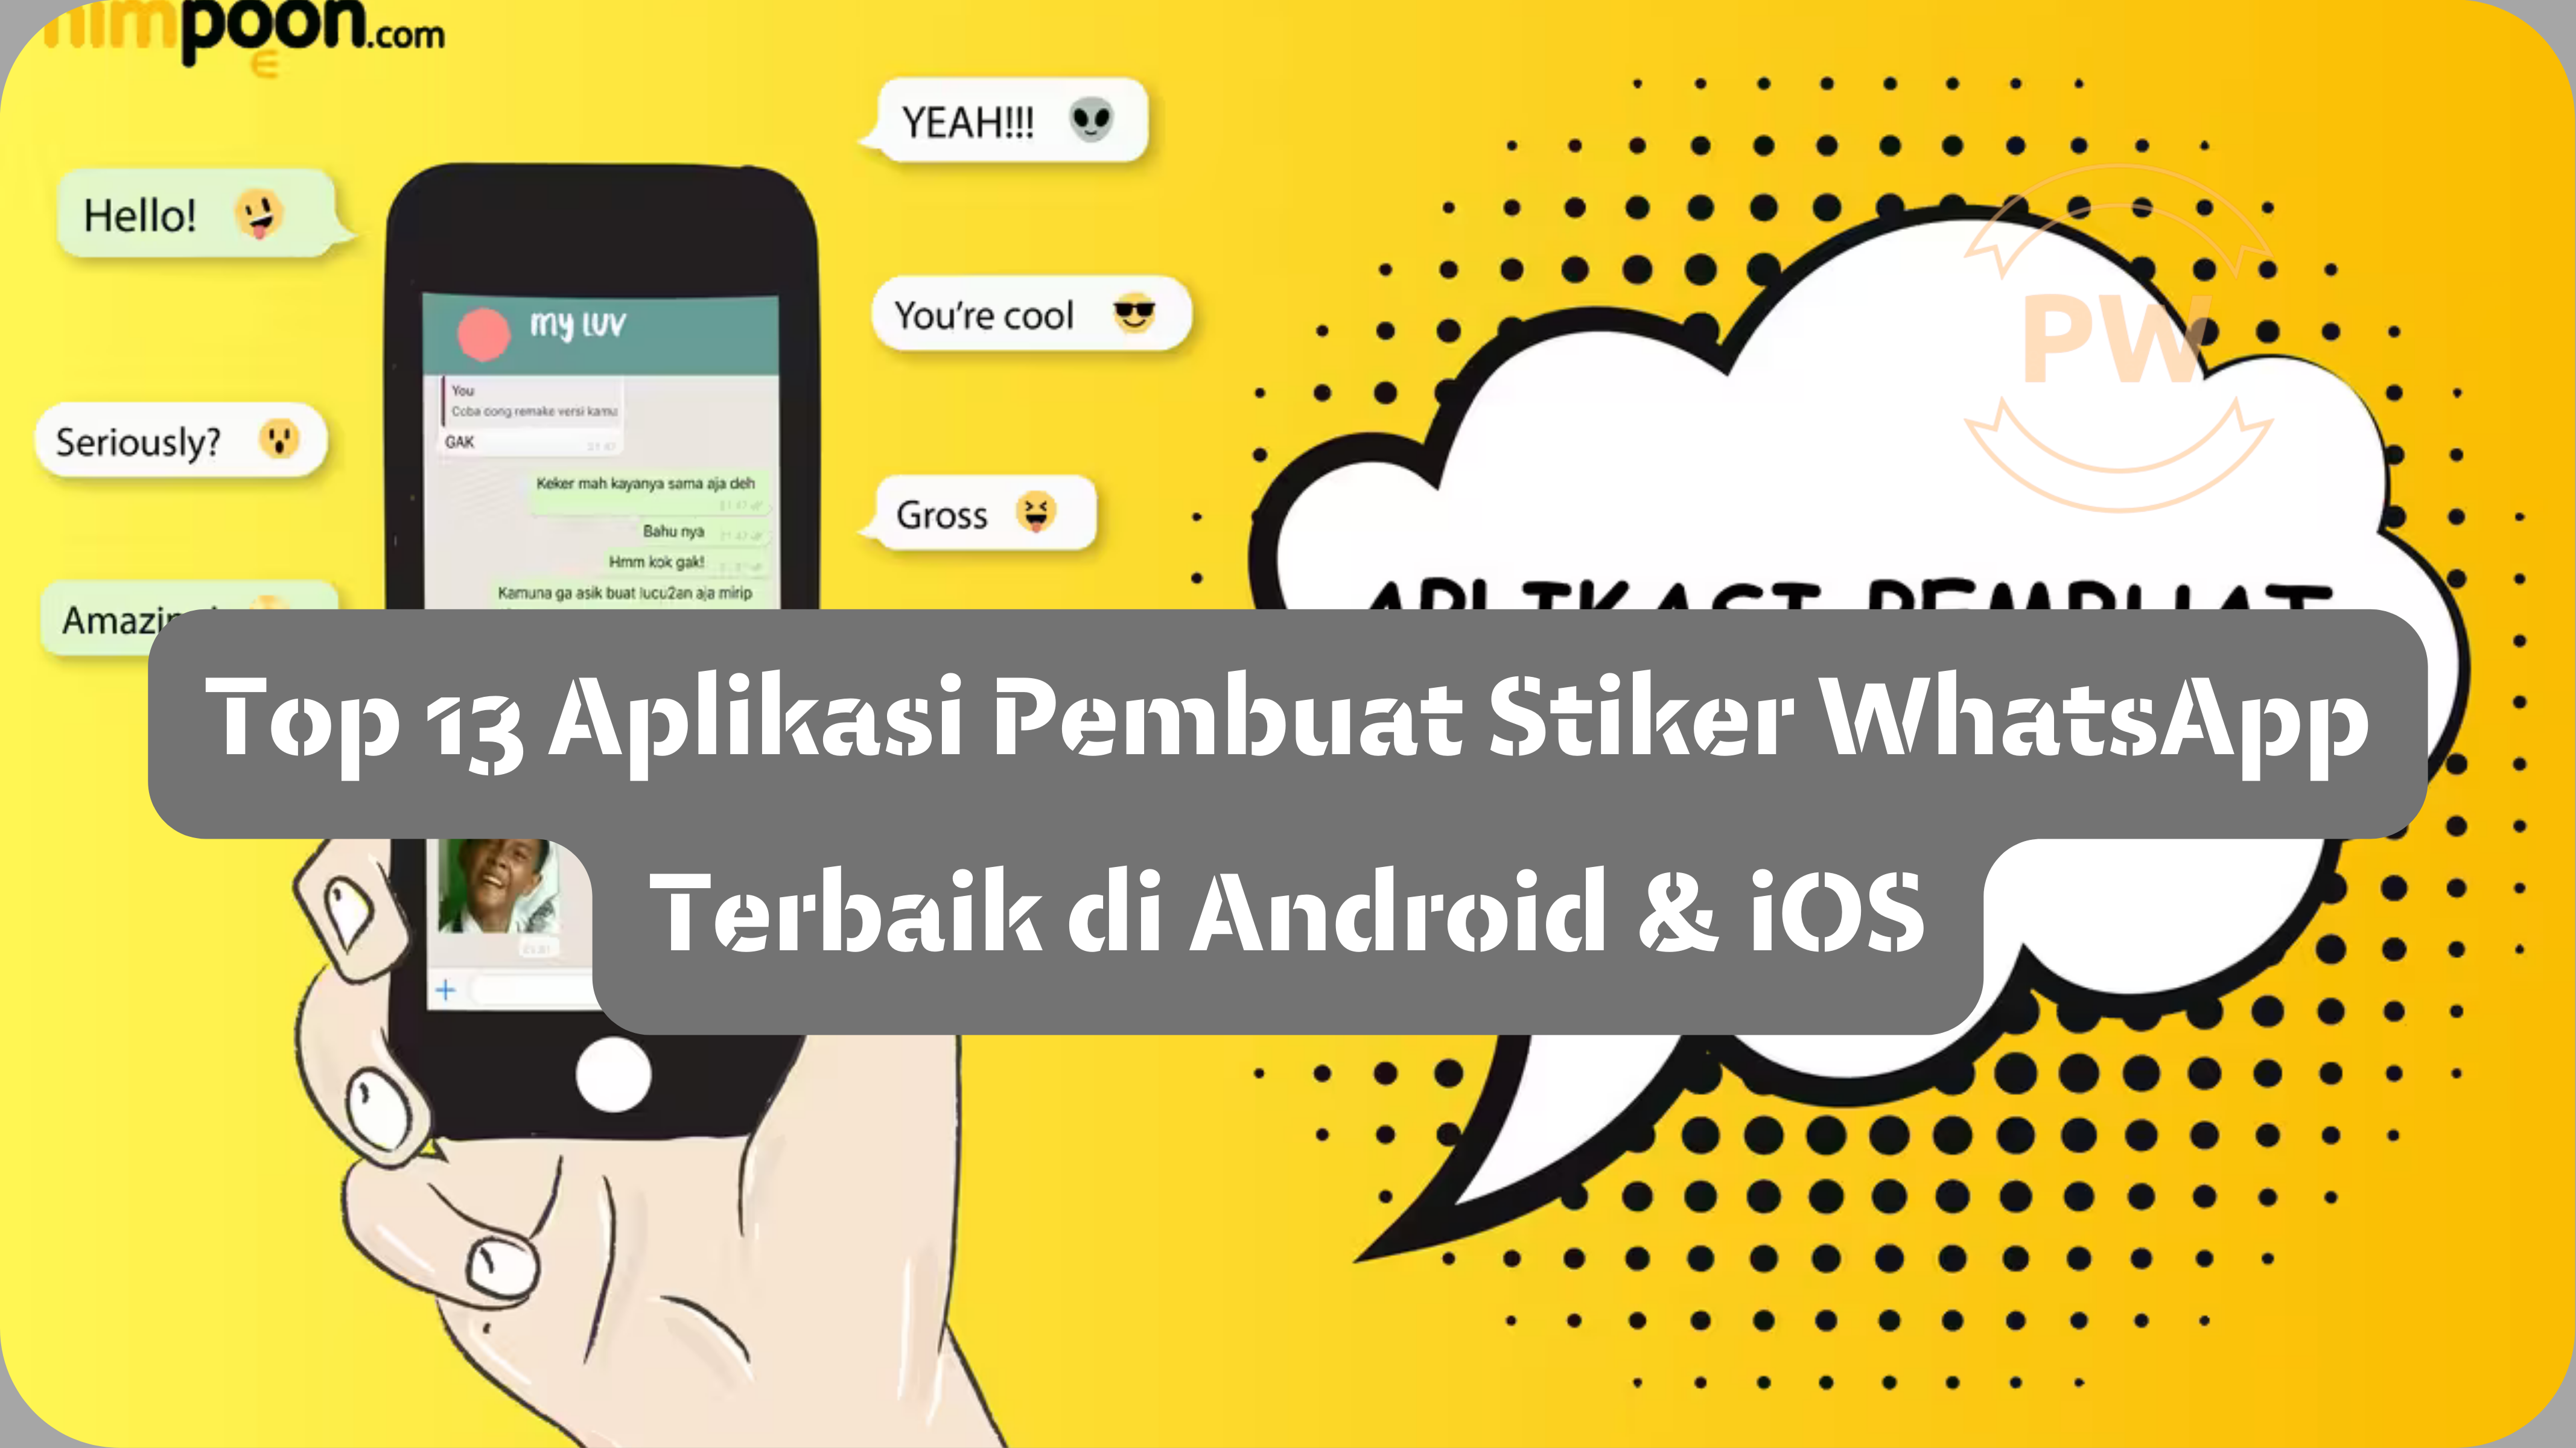 Top 13 Aplikasi Pembuat Stiker WhatsApp Terbaik di Android & iOS